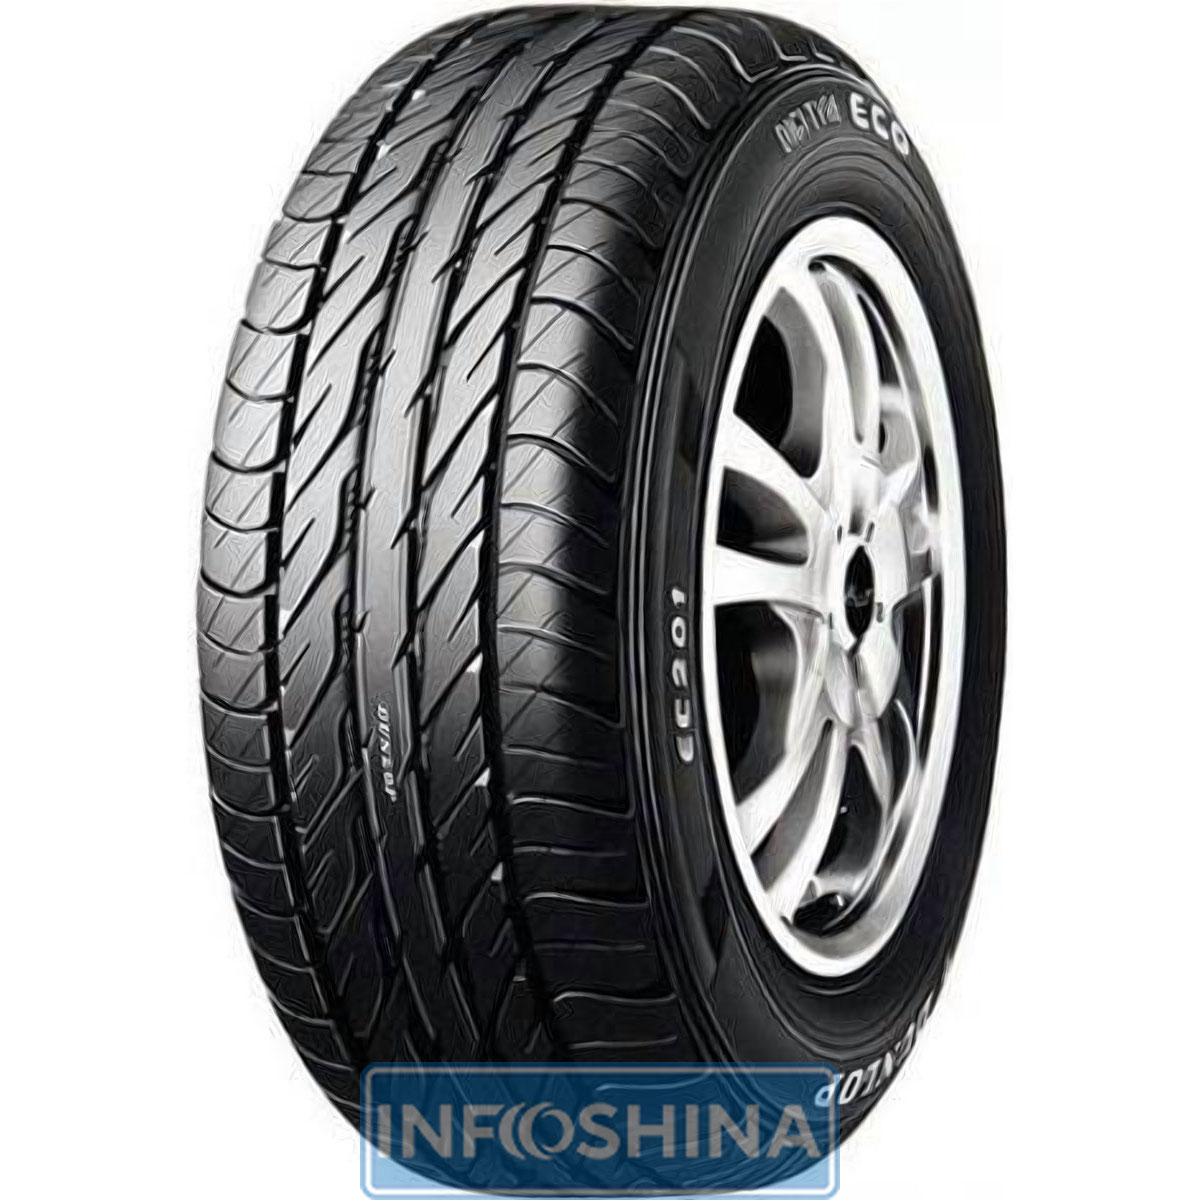 Купить шины Dunlop Digi-Tyre Eco EC 201 165/70 R12 77T